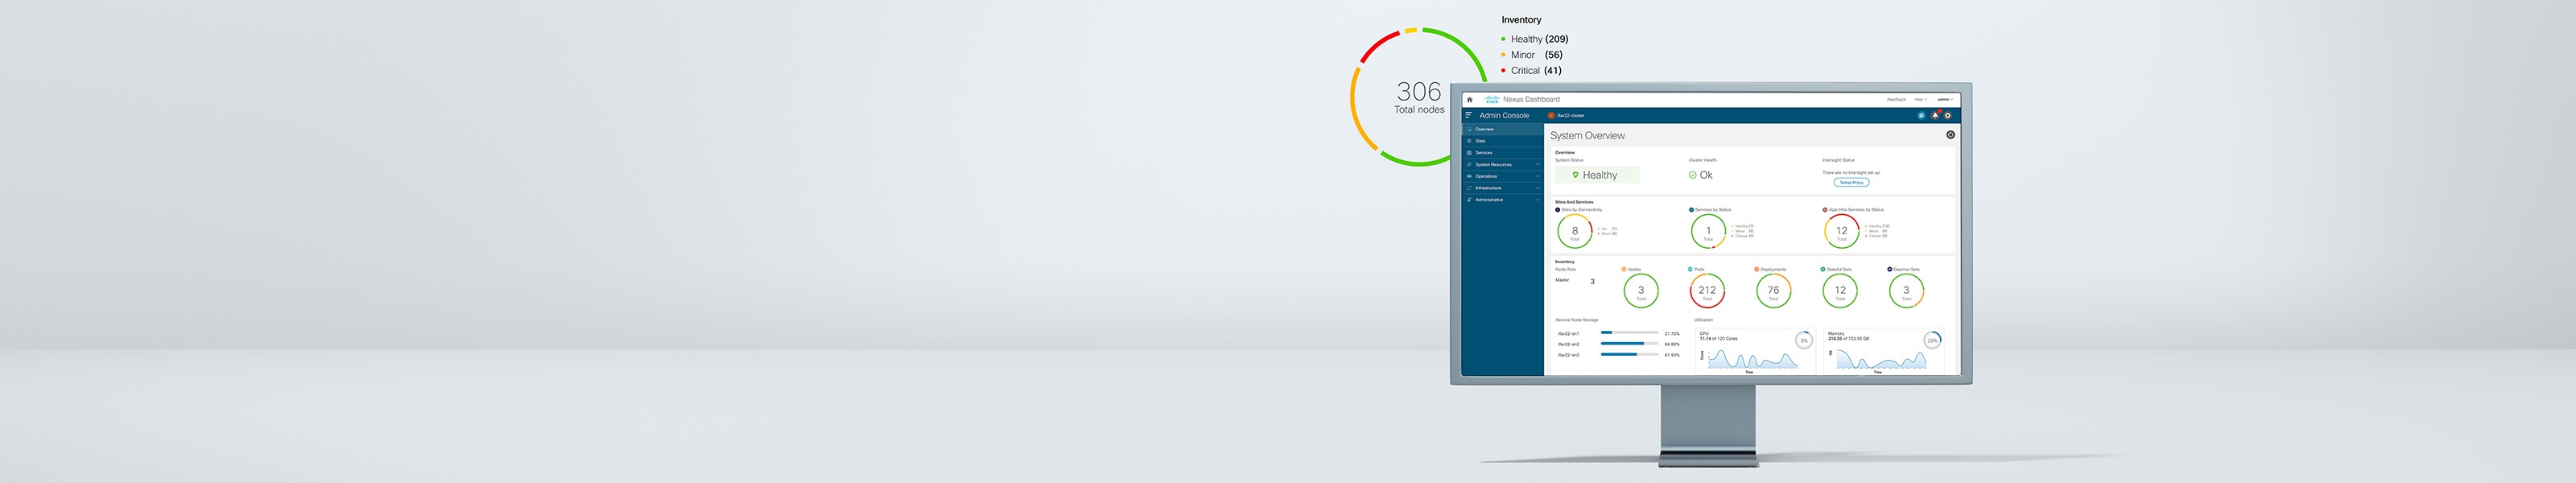 Cisco Nexus Dashboard ハイブリッドクラウド ネットワーク オペレーション